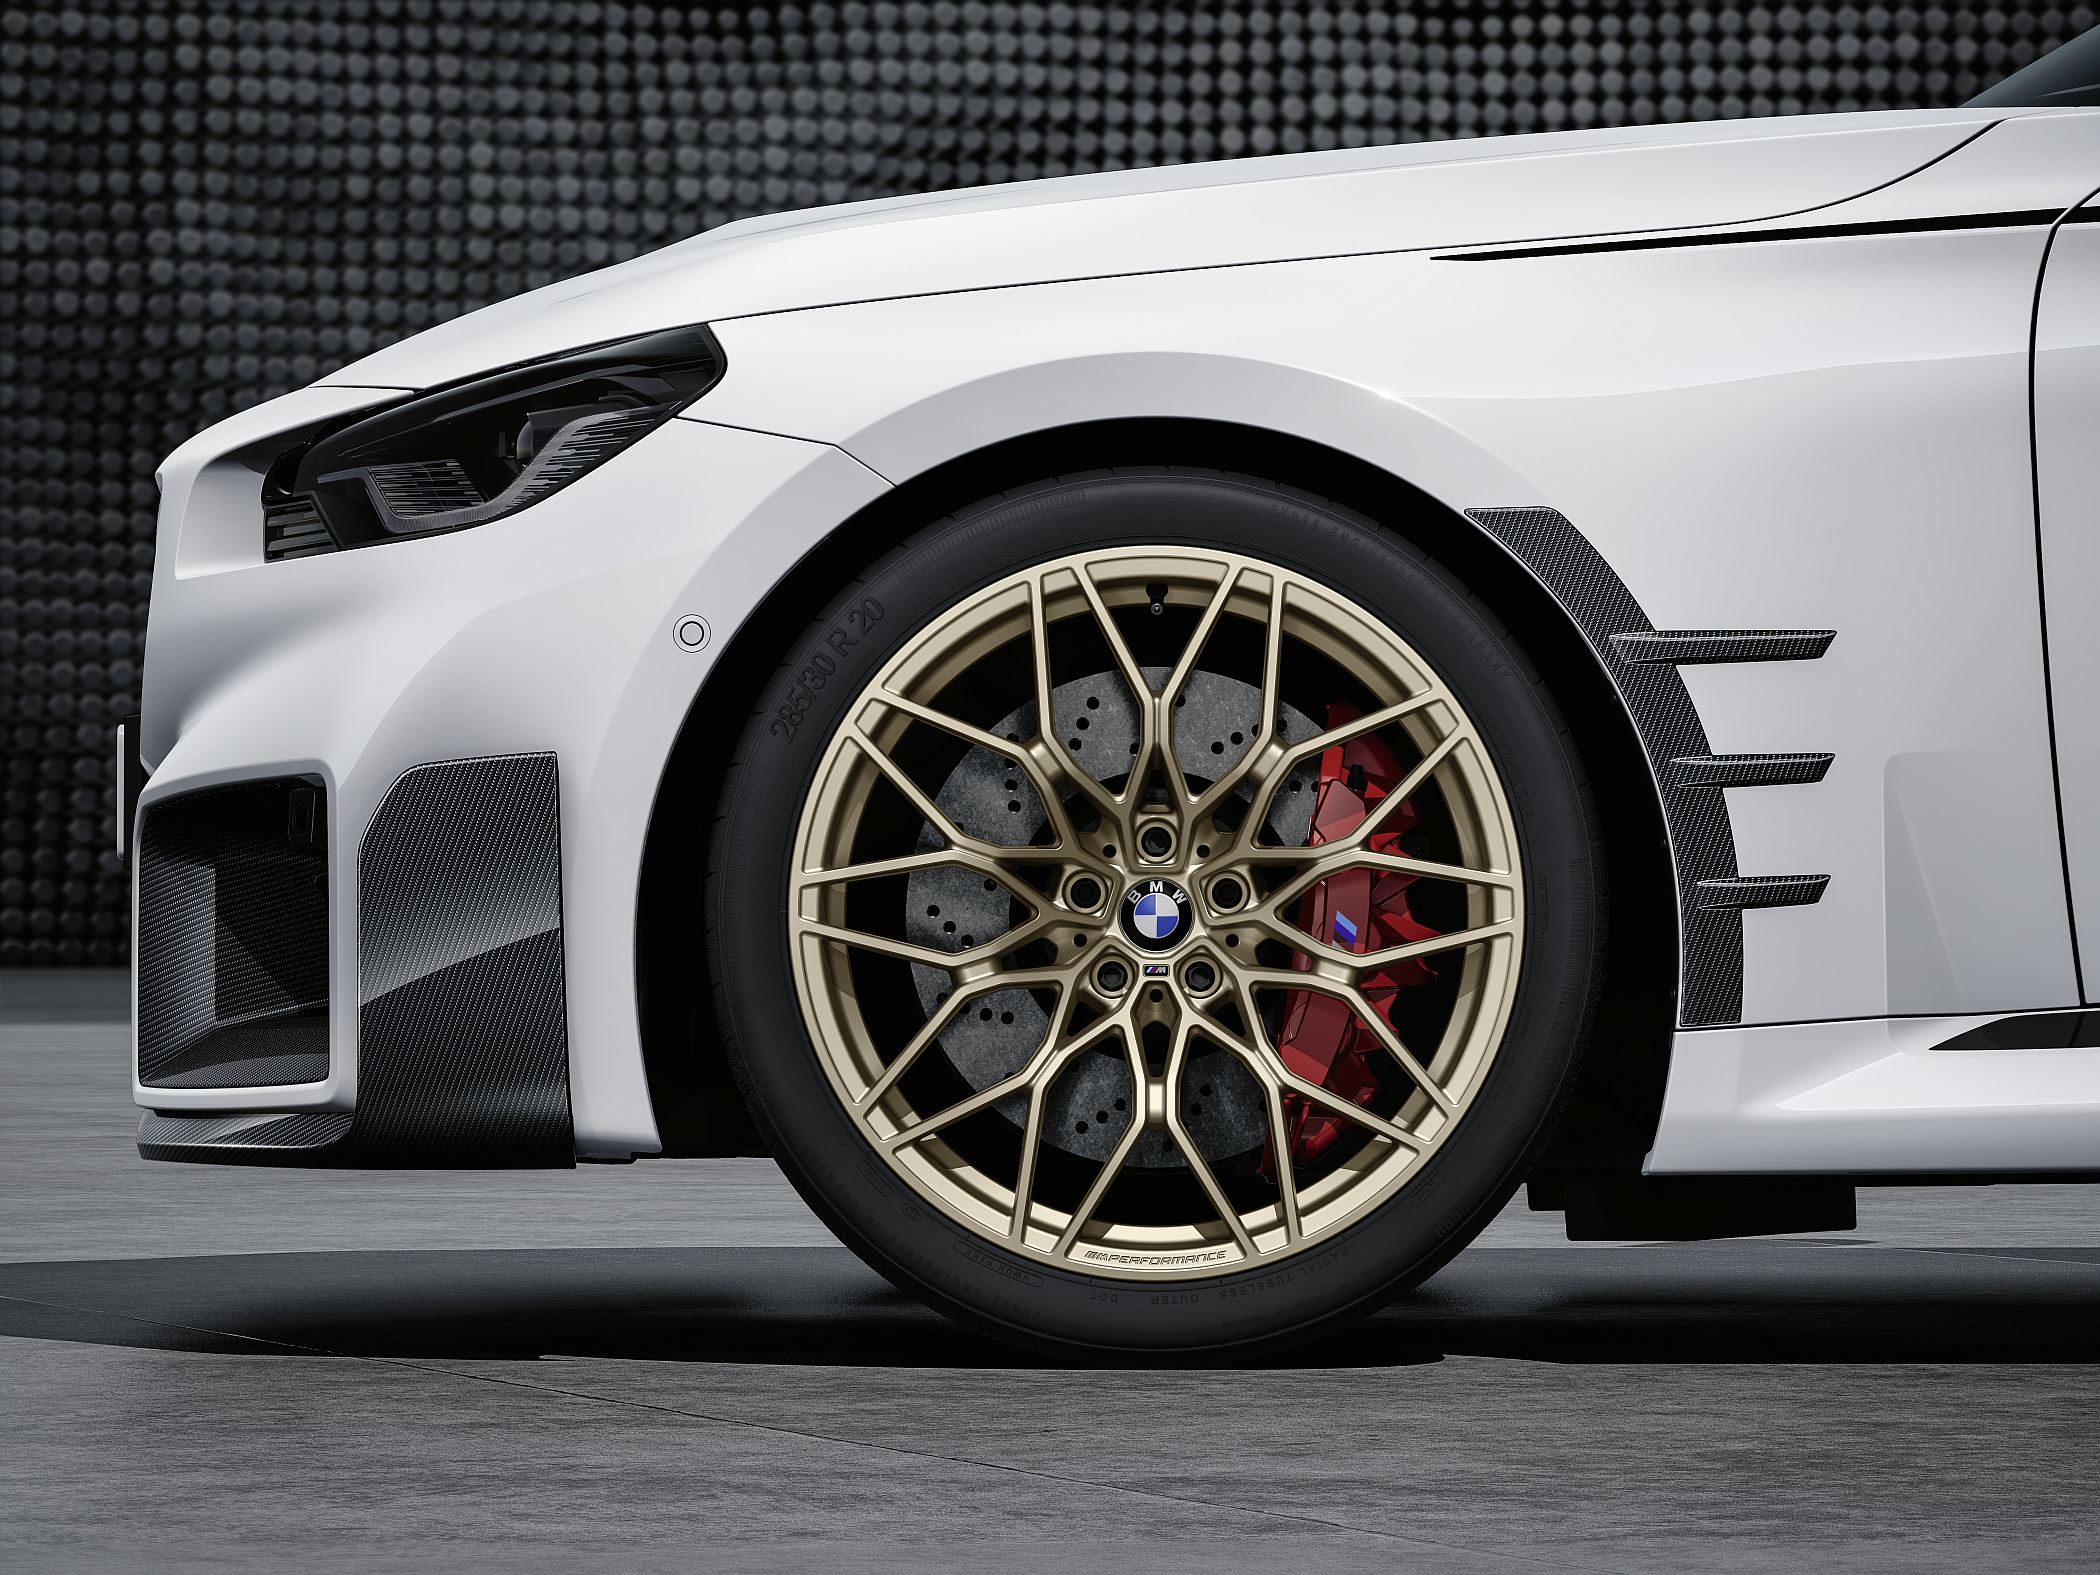 Puro DNA de pista: BMW M Performance Parts deixam o M2 ainda mais com cara  de carro de corrida